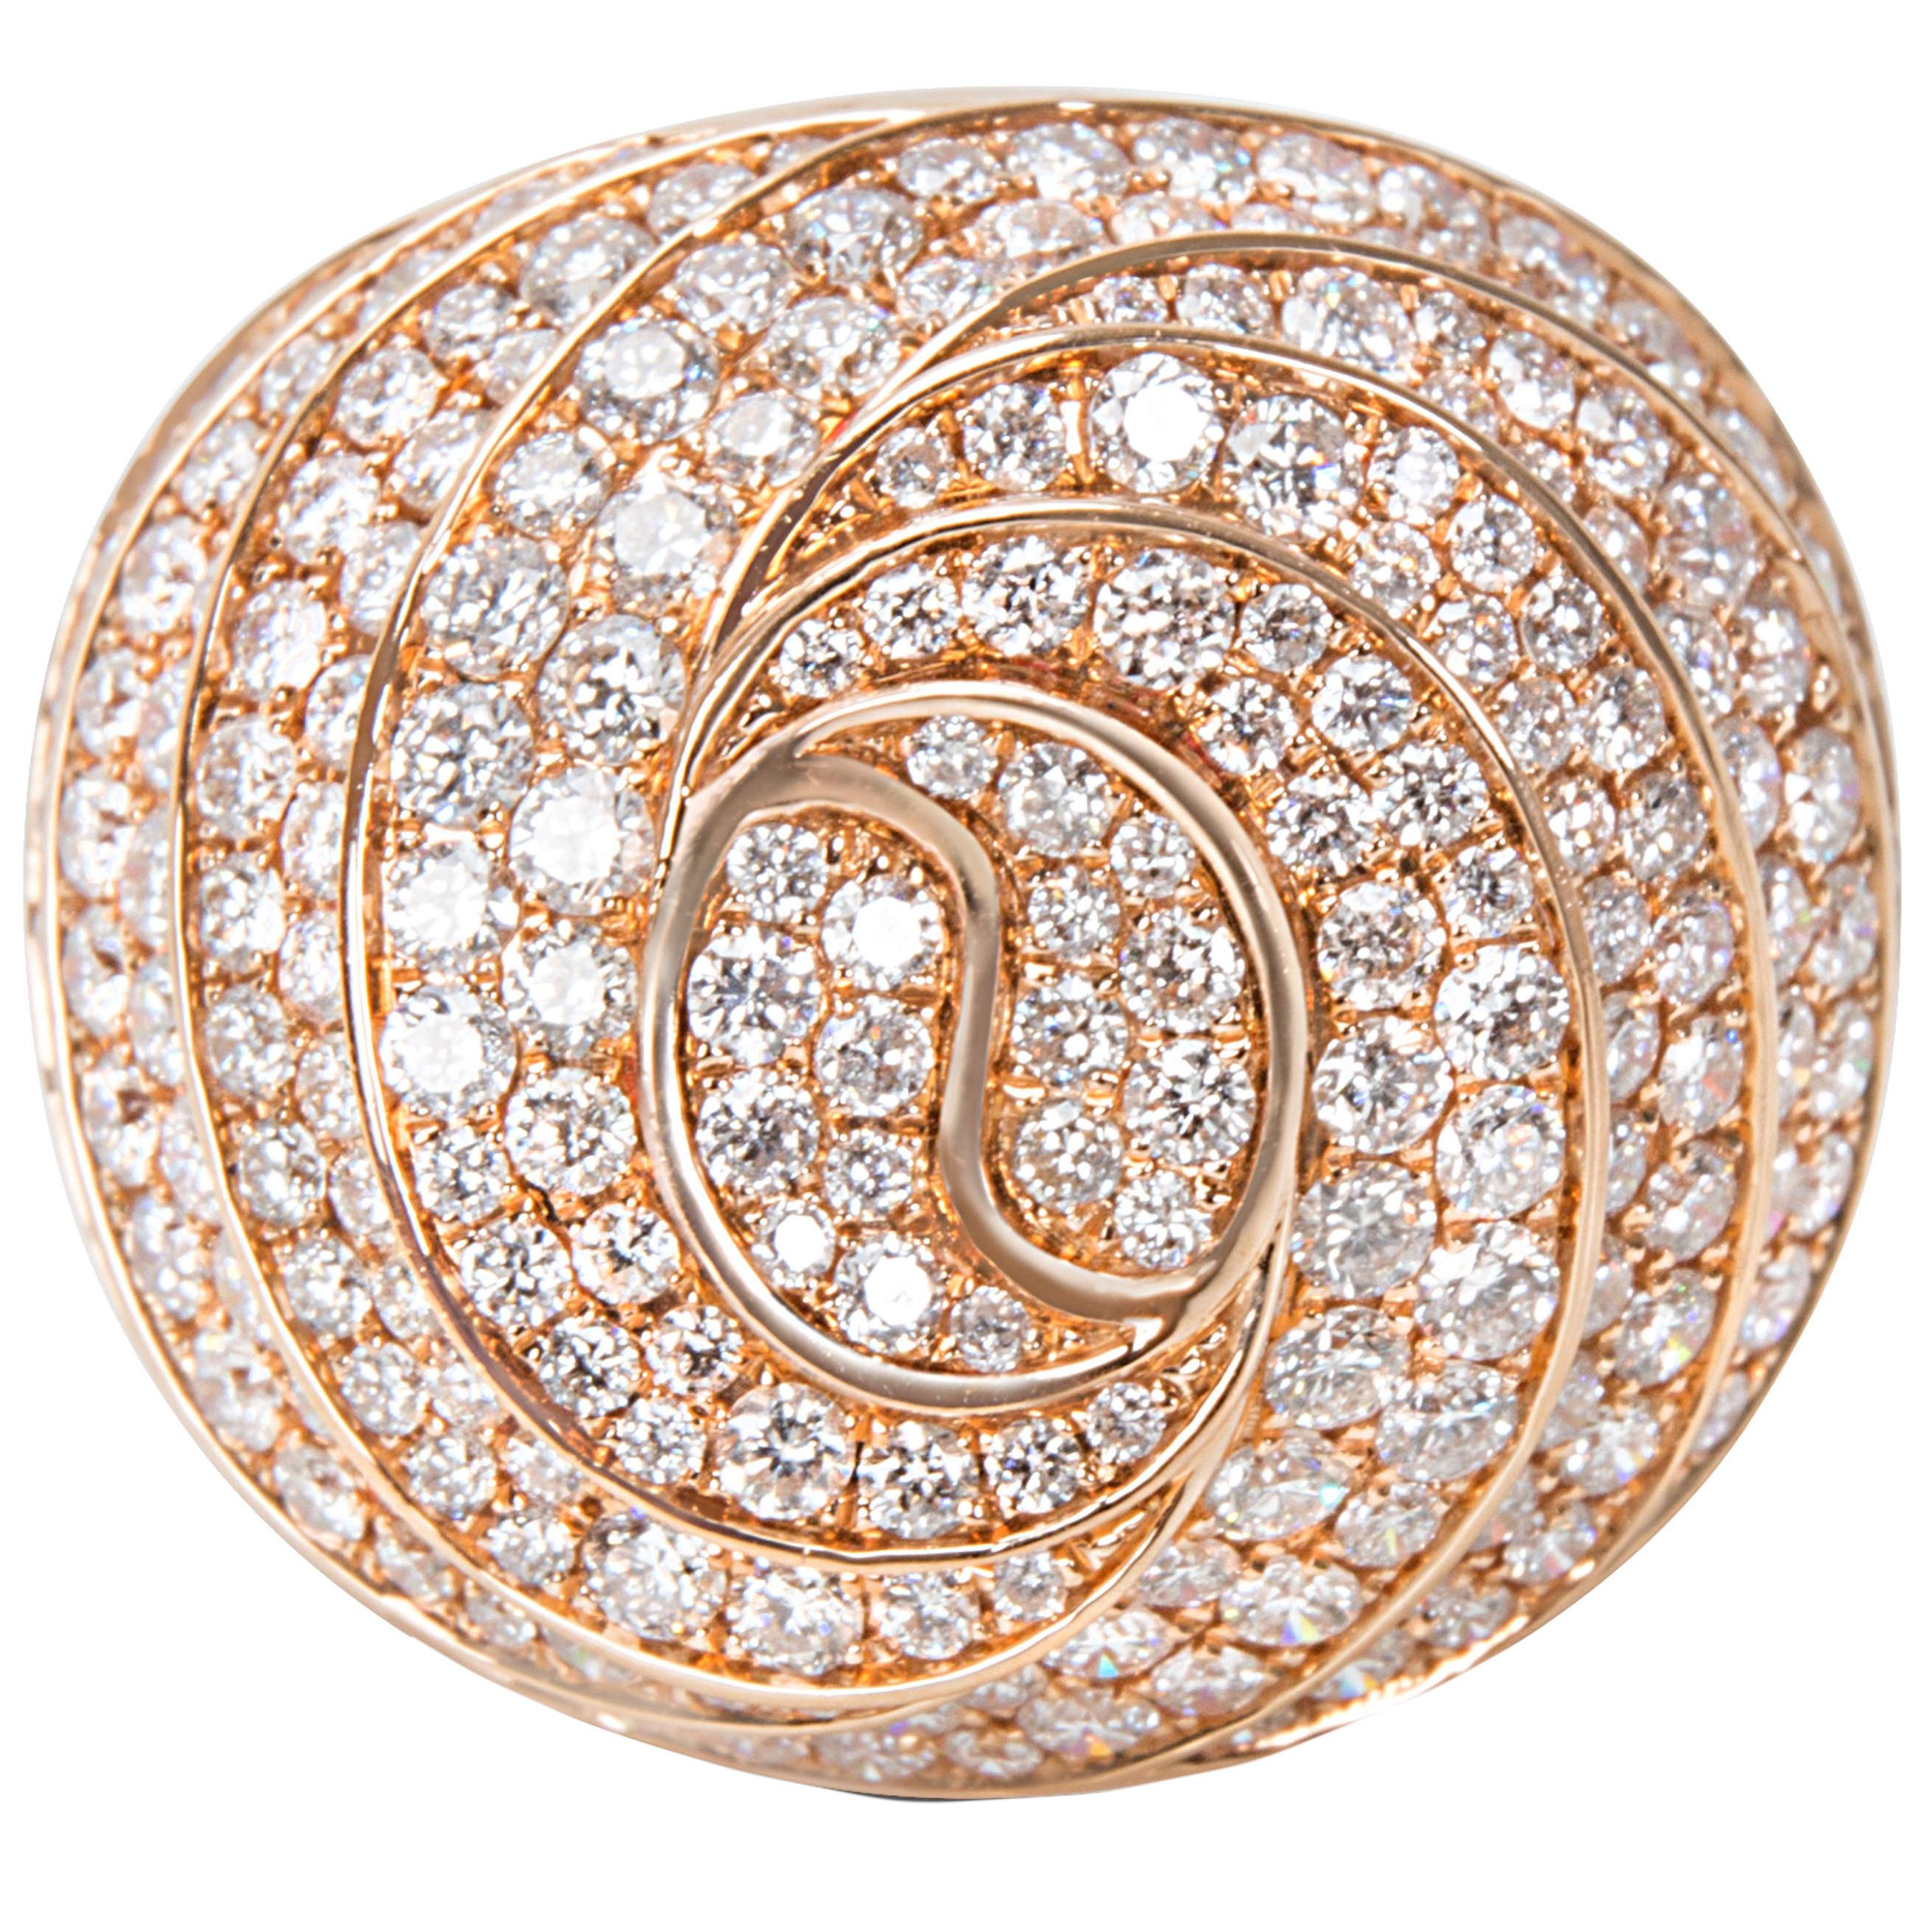 Pave Diamond Swirl Ring in 18 Karat Pink Gold 4.61 Carat